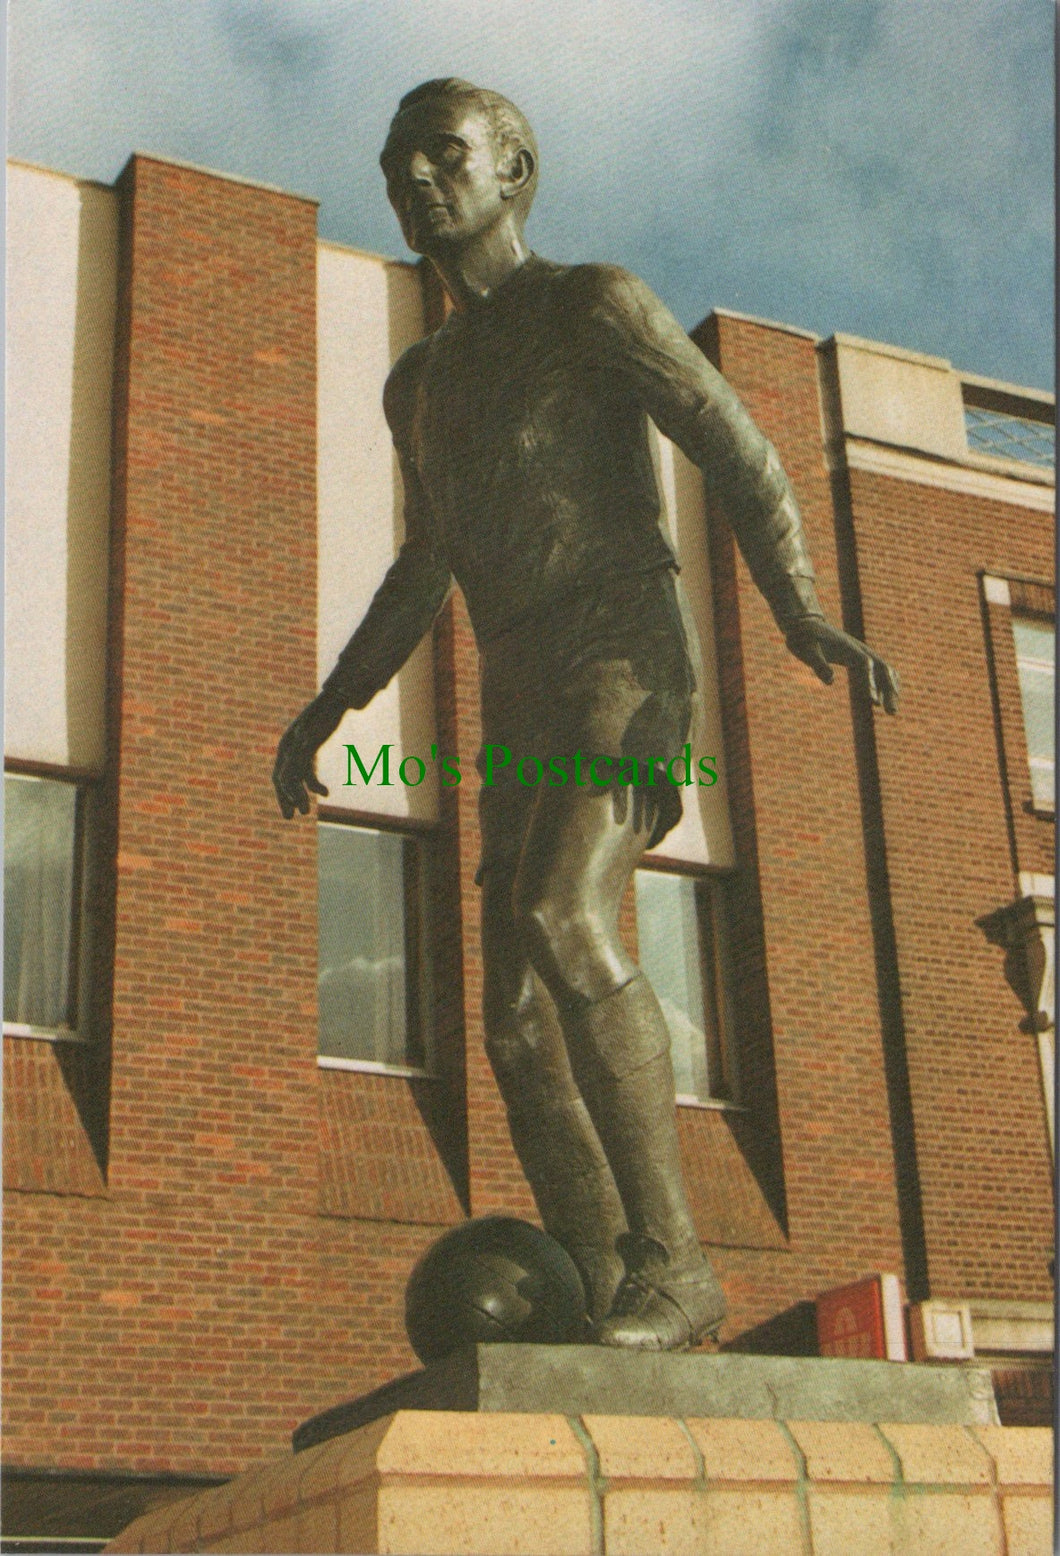 Stanley Matthews' Statue, Hanley, Staffordshire